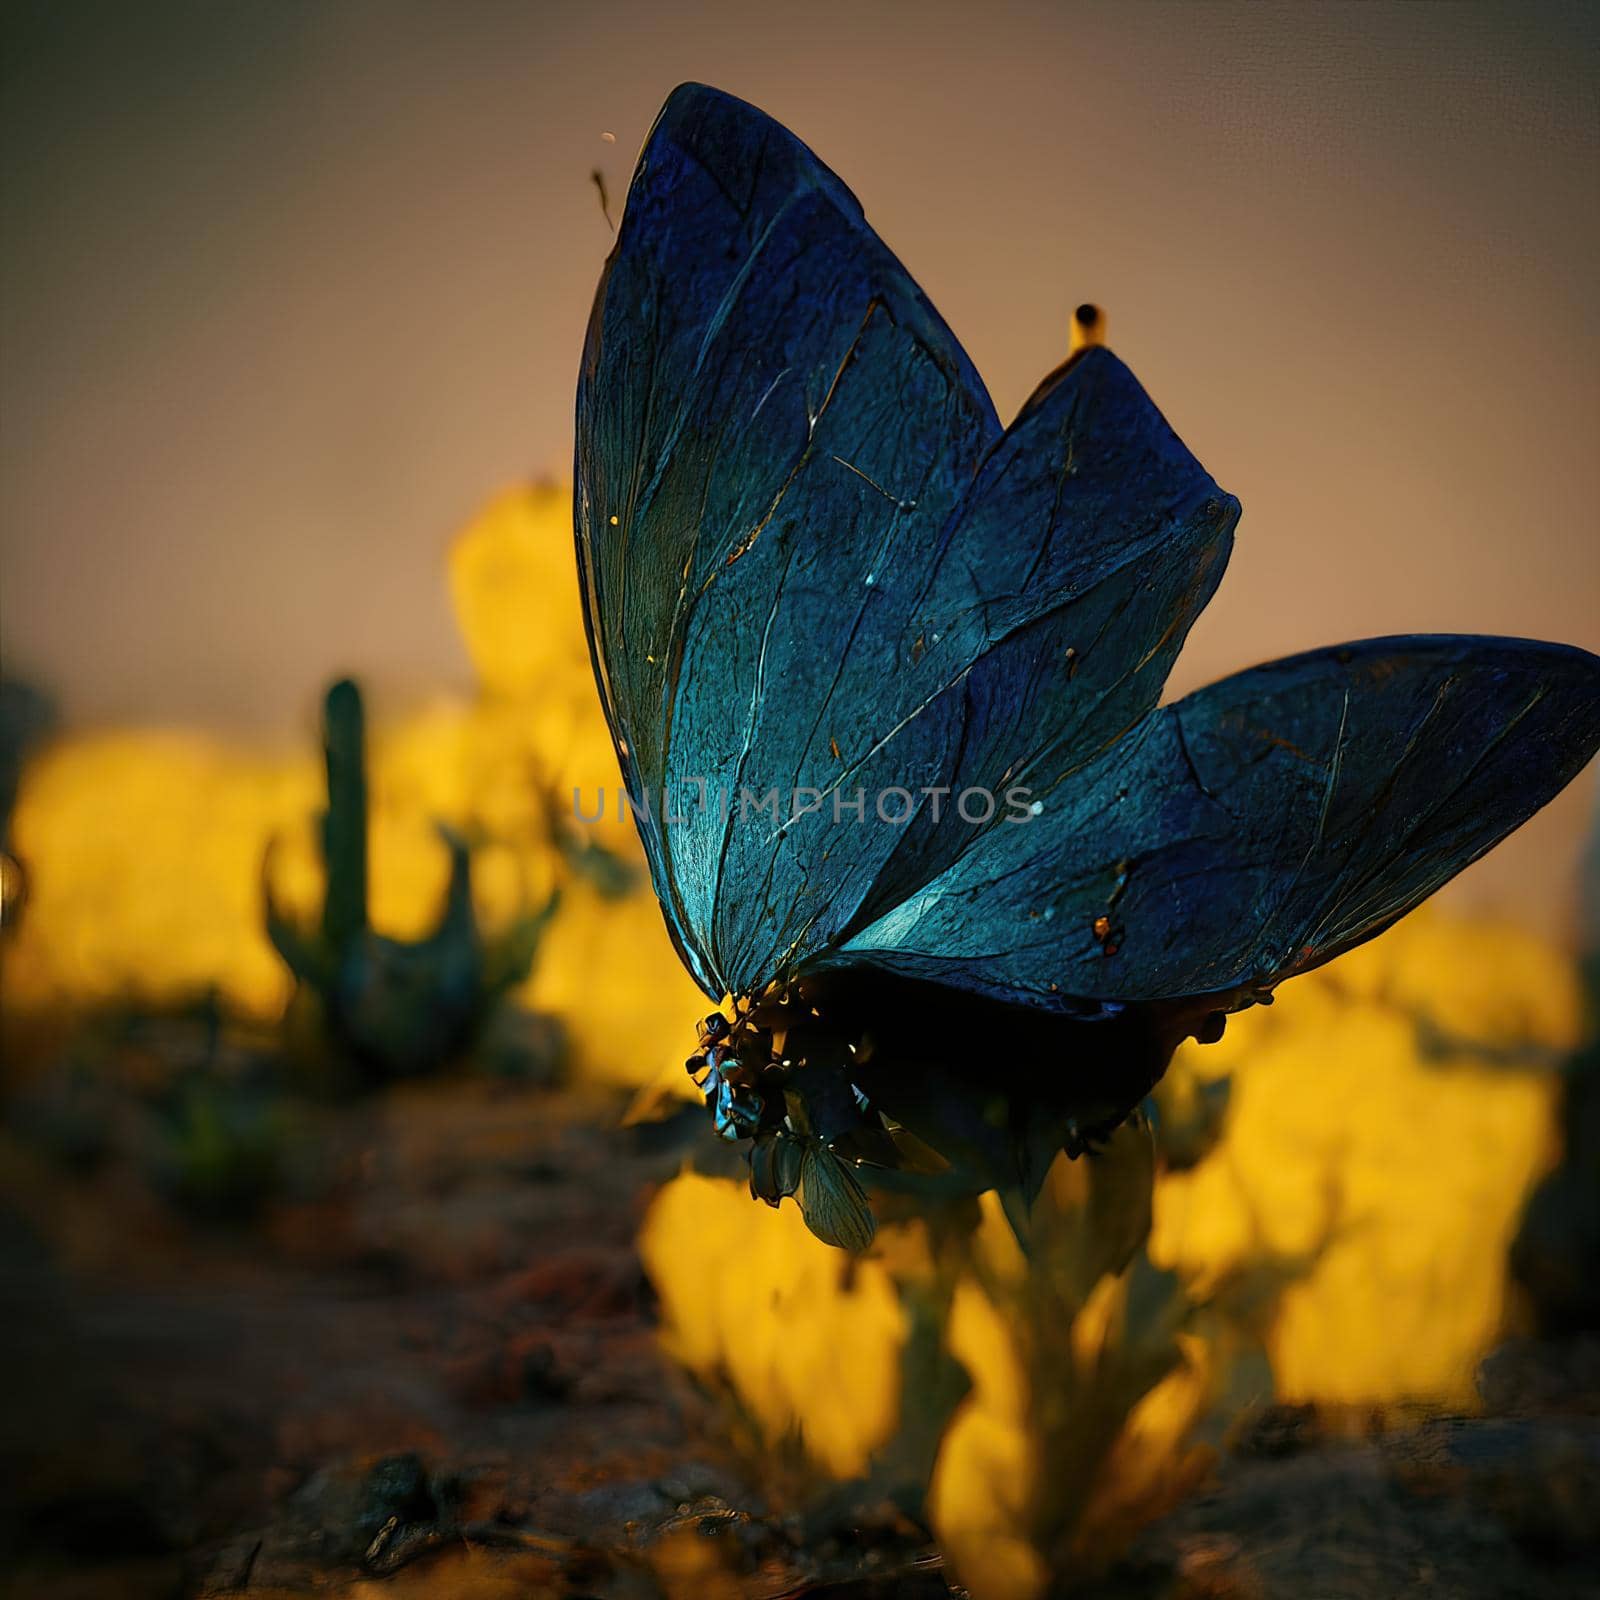 Digital art of butterfly sitting on flower by Farcas